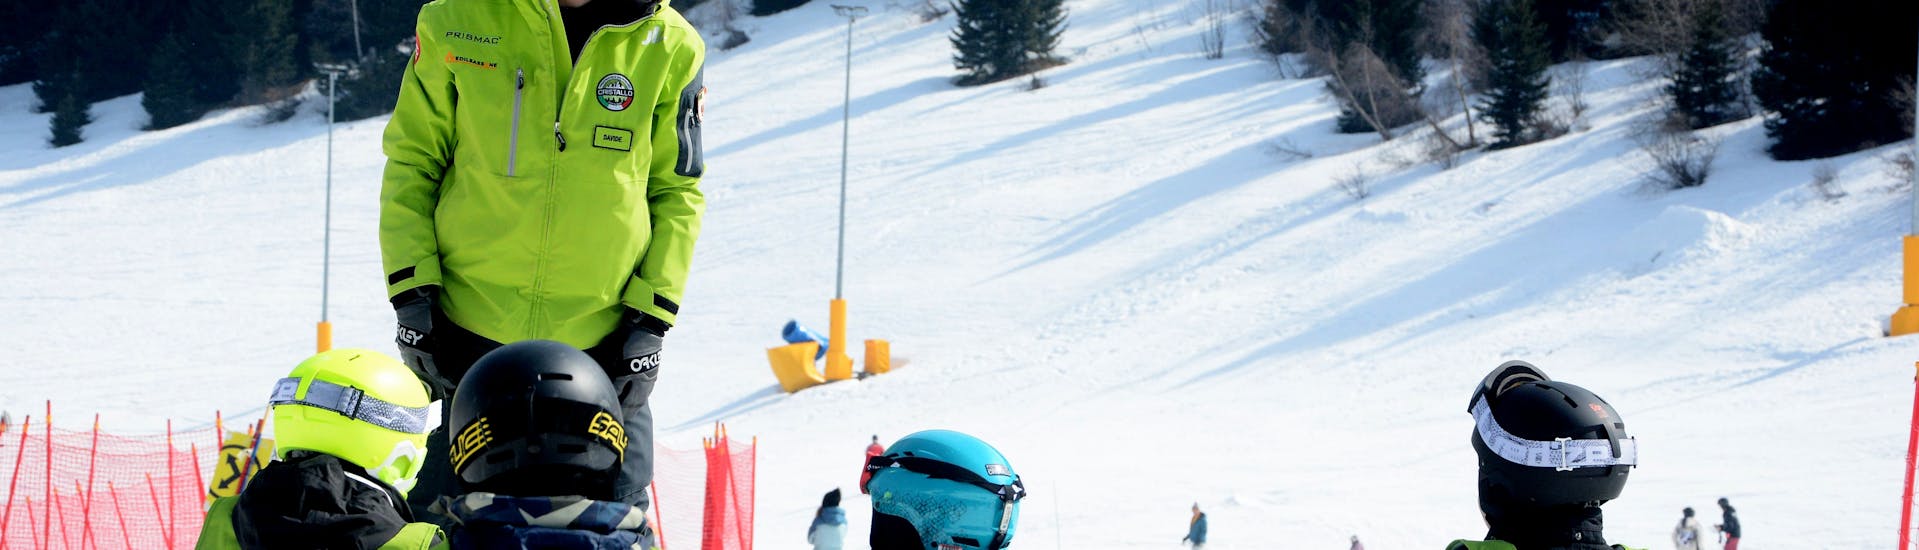 Un istruttore parla con i bambini durante una delle Lezioni private di snowboard - Tutte le età e livelli organizzate dai Maestri di Sci Cristallo - Monte Bondone nel comprensorio sciistico del Monte Bondone.